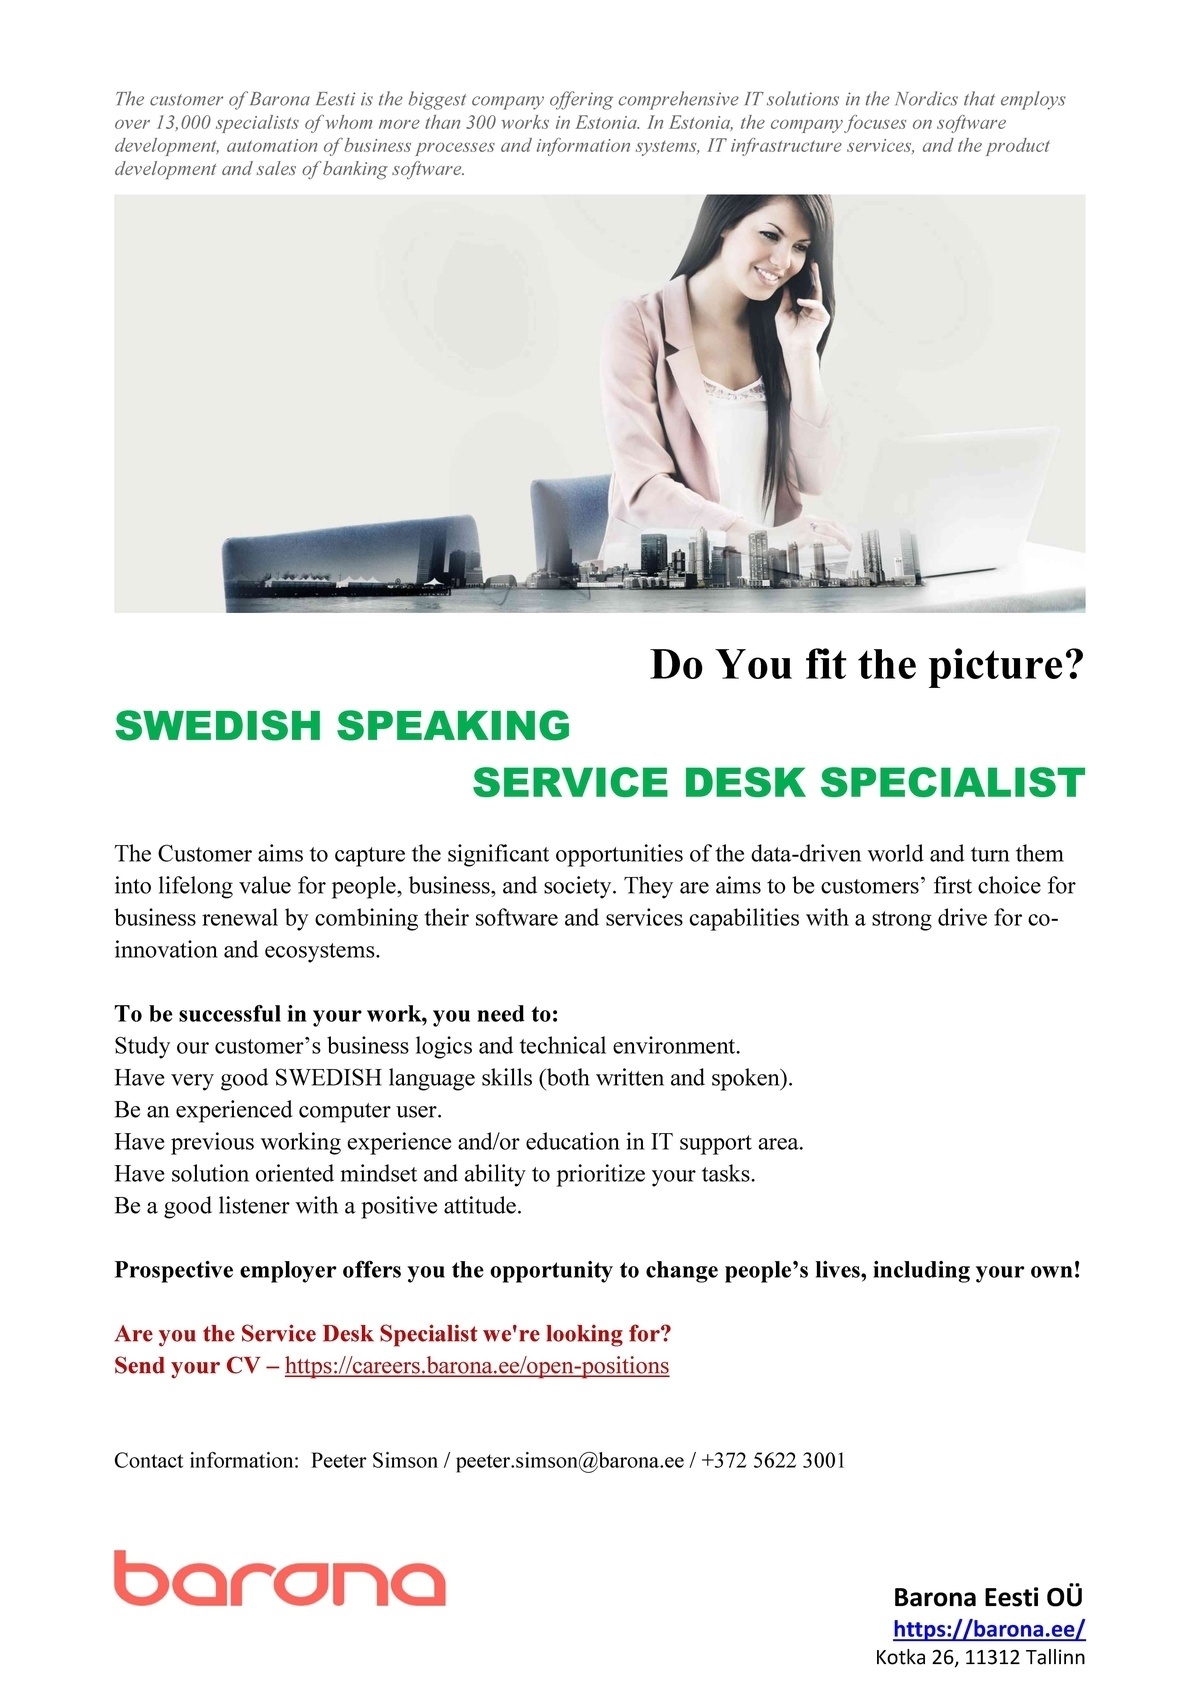 Barona Eesti OÜ Swedish speaking SERVICE DESK SPECIALIST